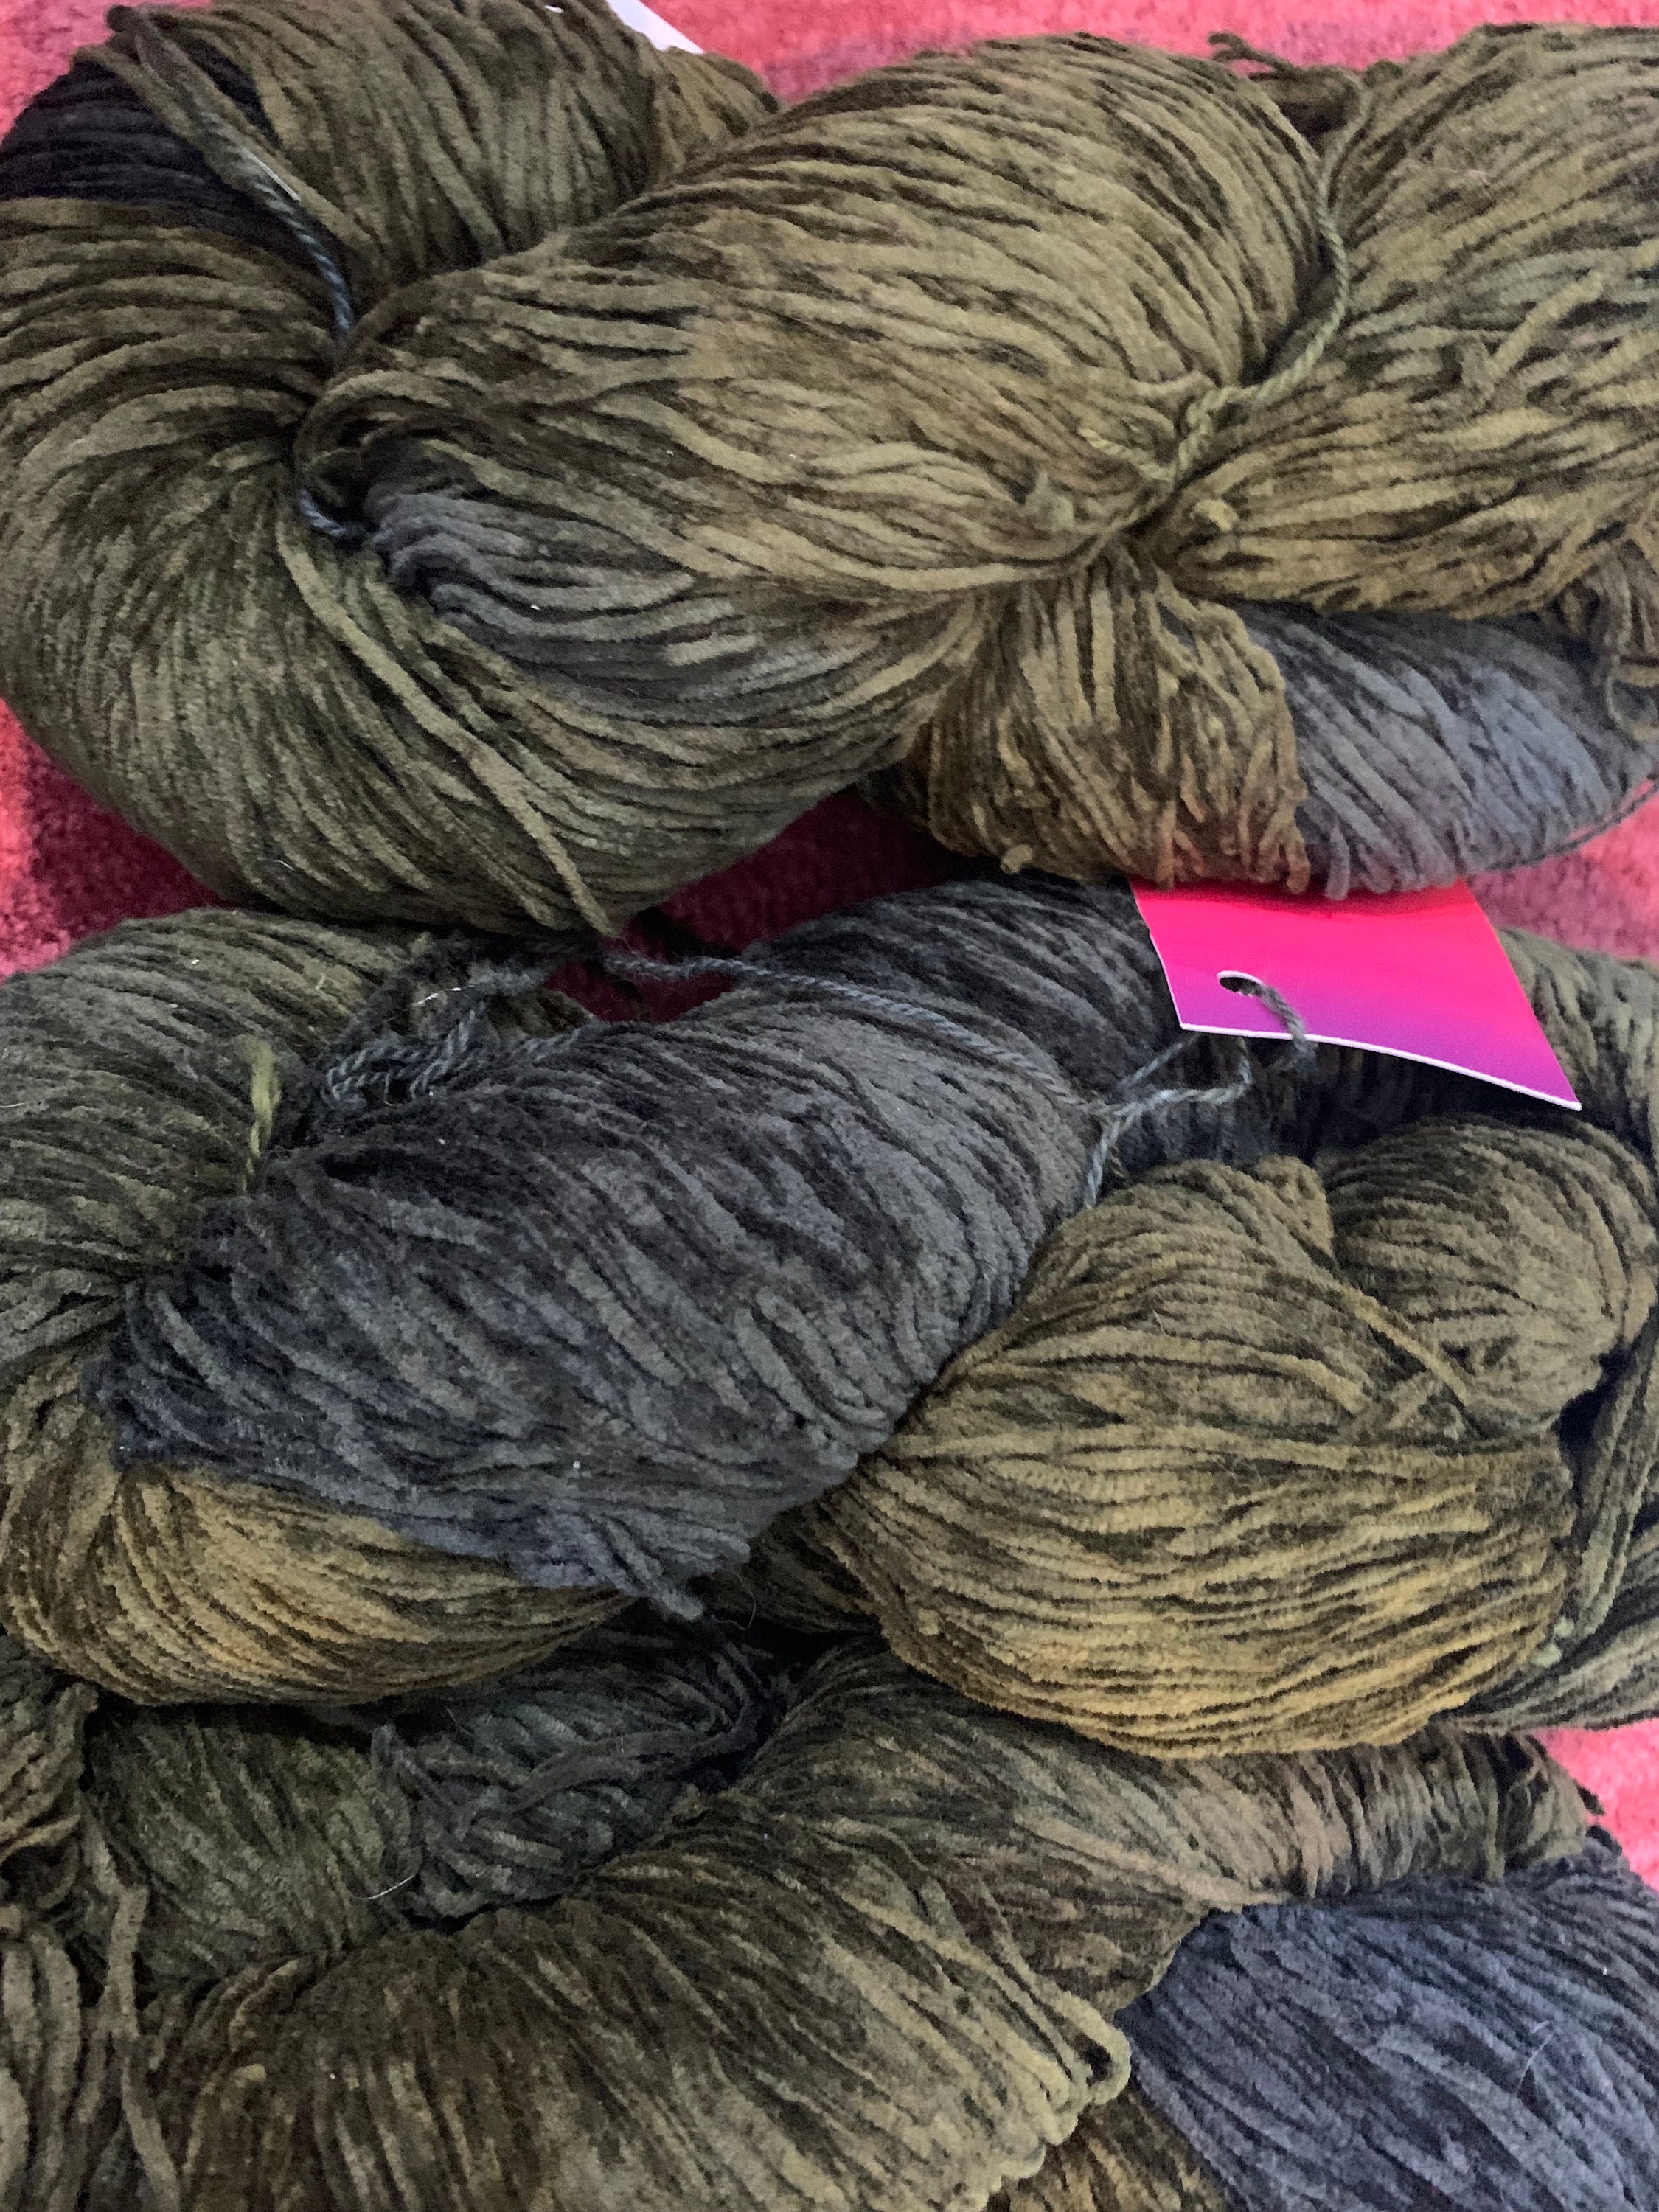 4/8 Black Cotton Warp String – Spruce & Linen